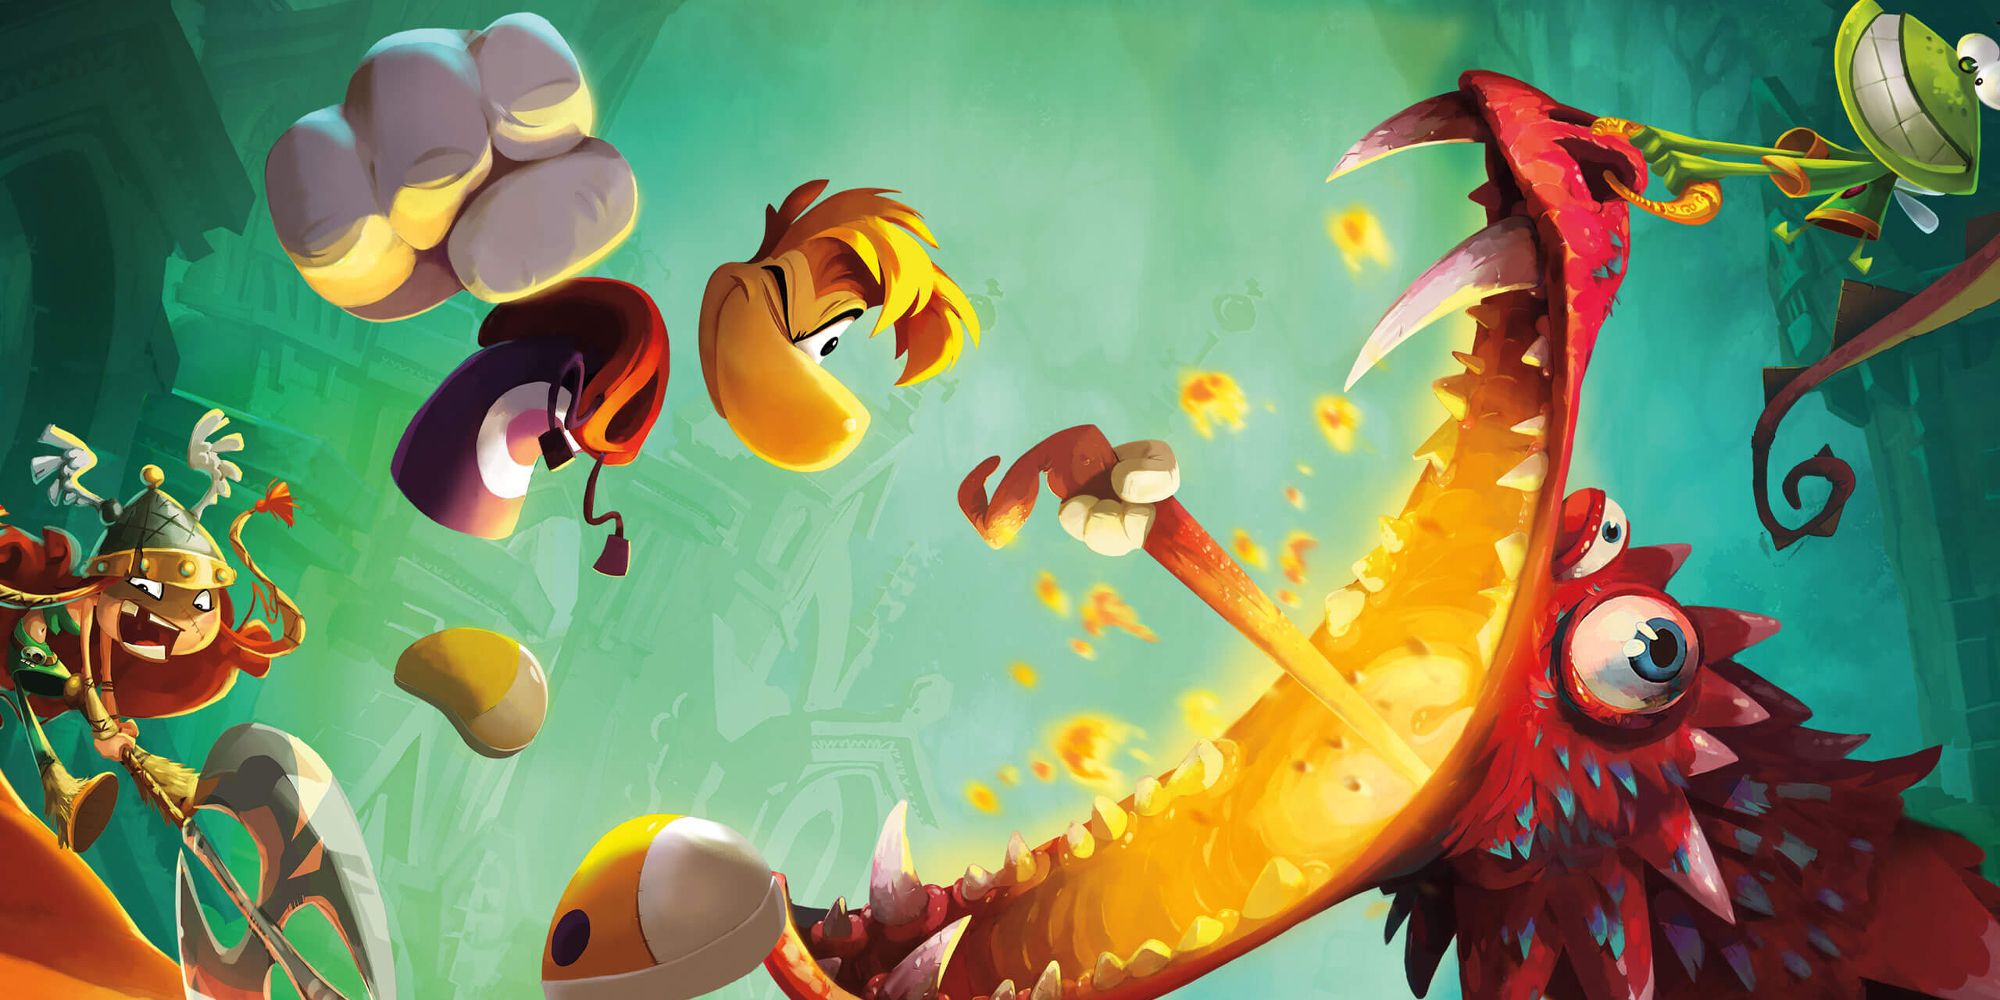 Rayman luchando contra un dragón en una obra de arte clave para Raymen Legends (2013)